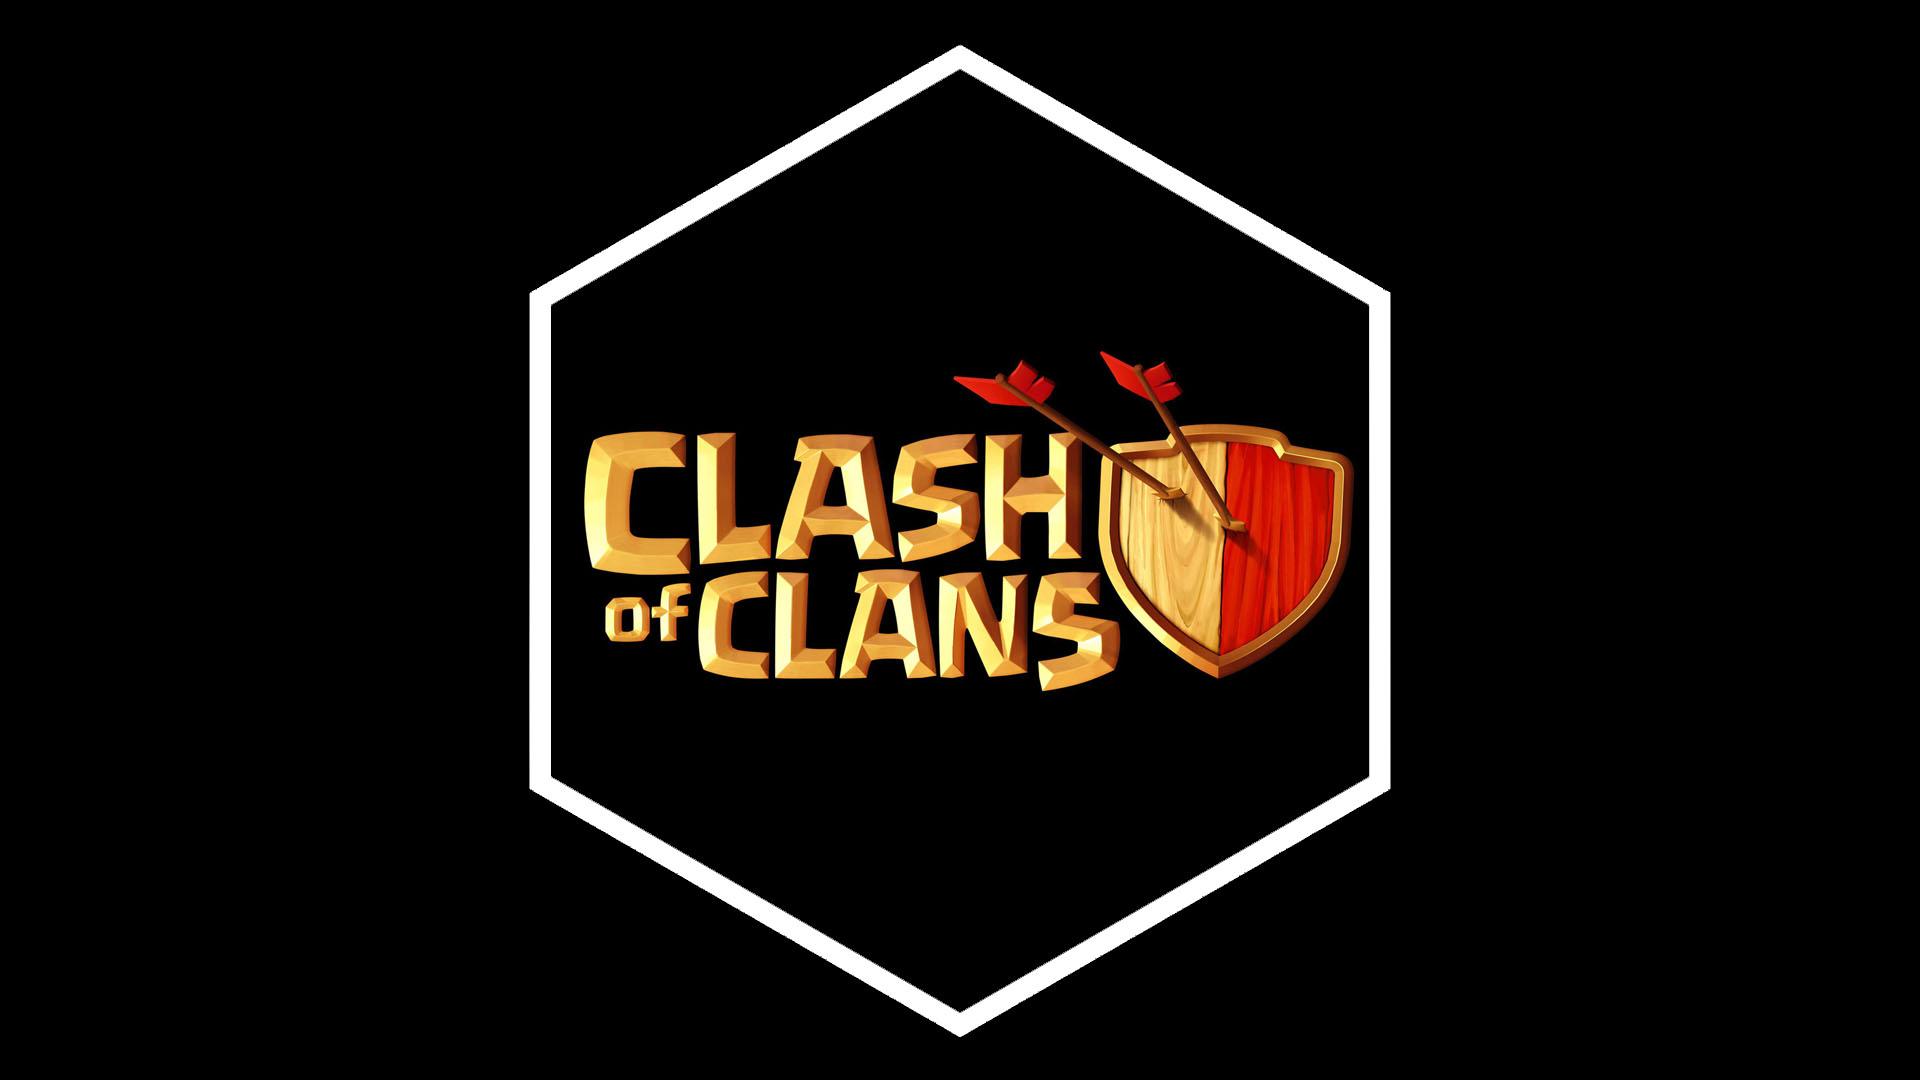 Les astuces pour protéger votre village sur Clash of Clans